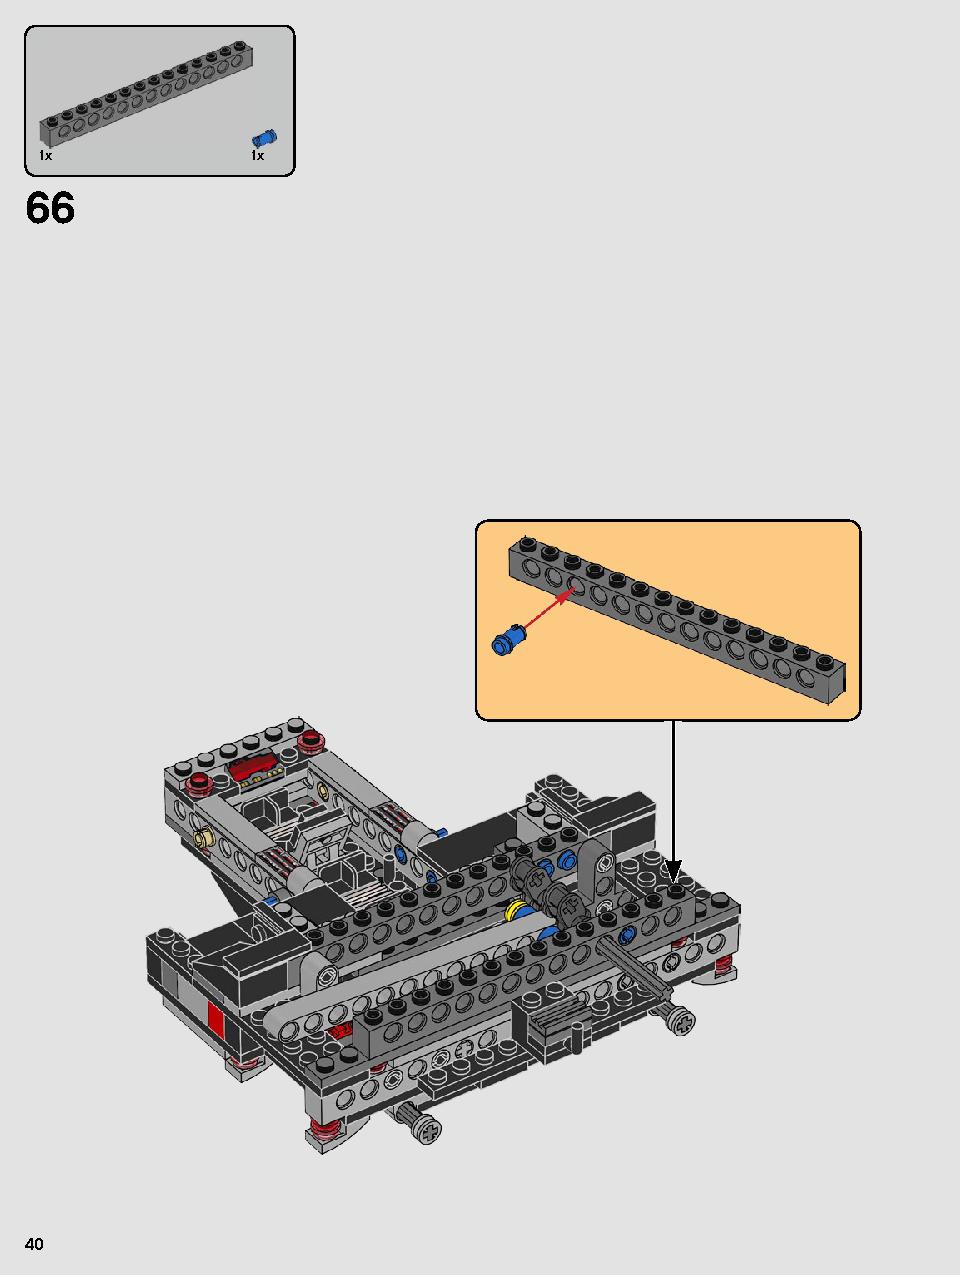 스타워즈 카일로 렌의 셔틀™ 75256 레고 세트 제품정보 레고 조립설명서 40 page